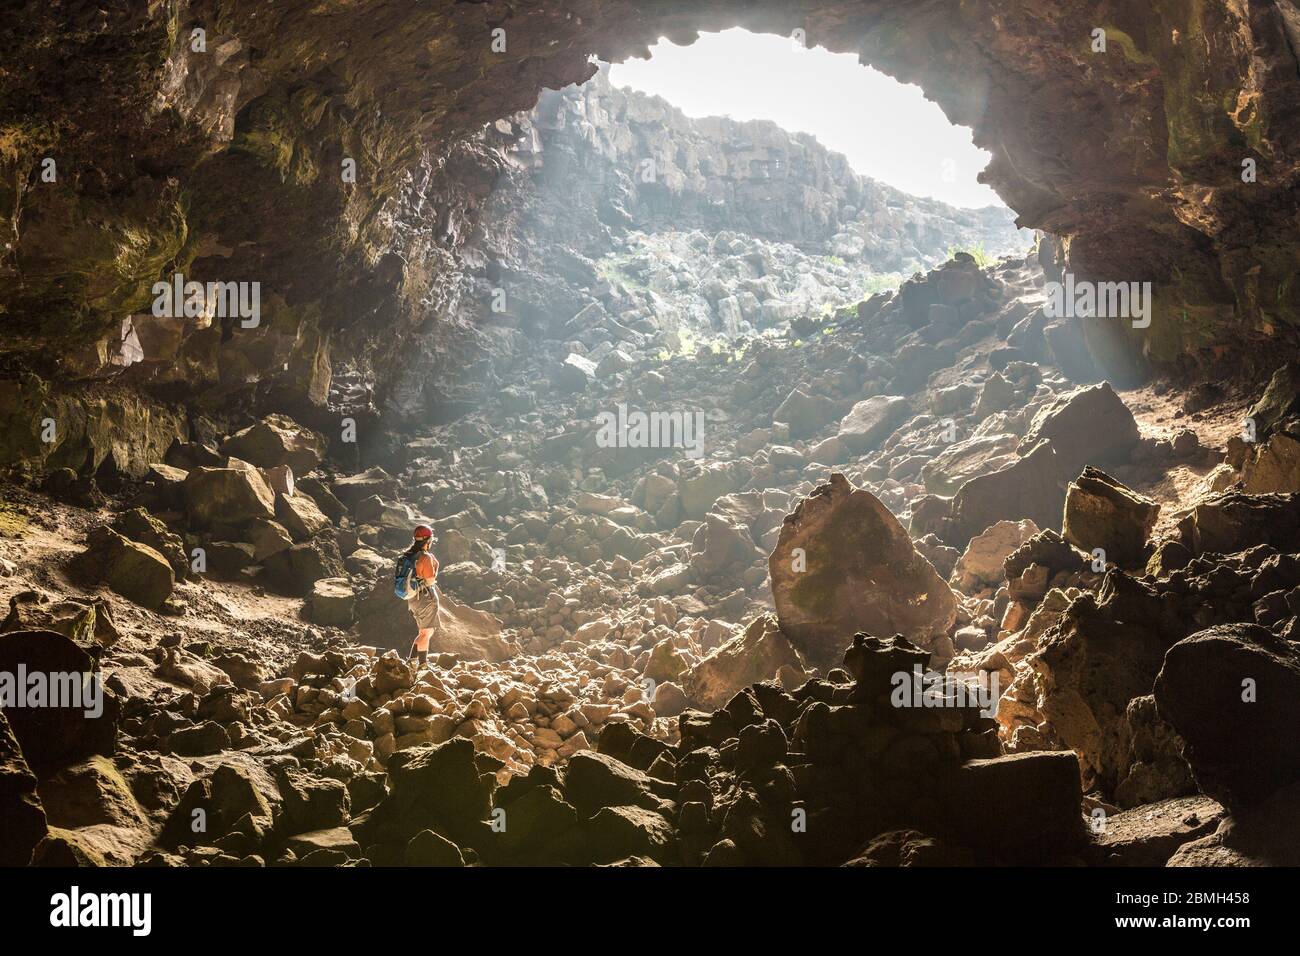 Eintritt zur Höhle der Lavastrohre, Jameo Puerta Falsa, Lanzarote, Kanarische Inseln, Spanien Stockfoto